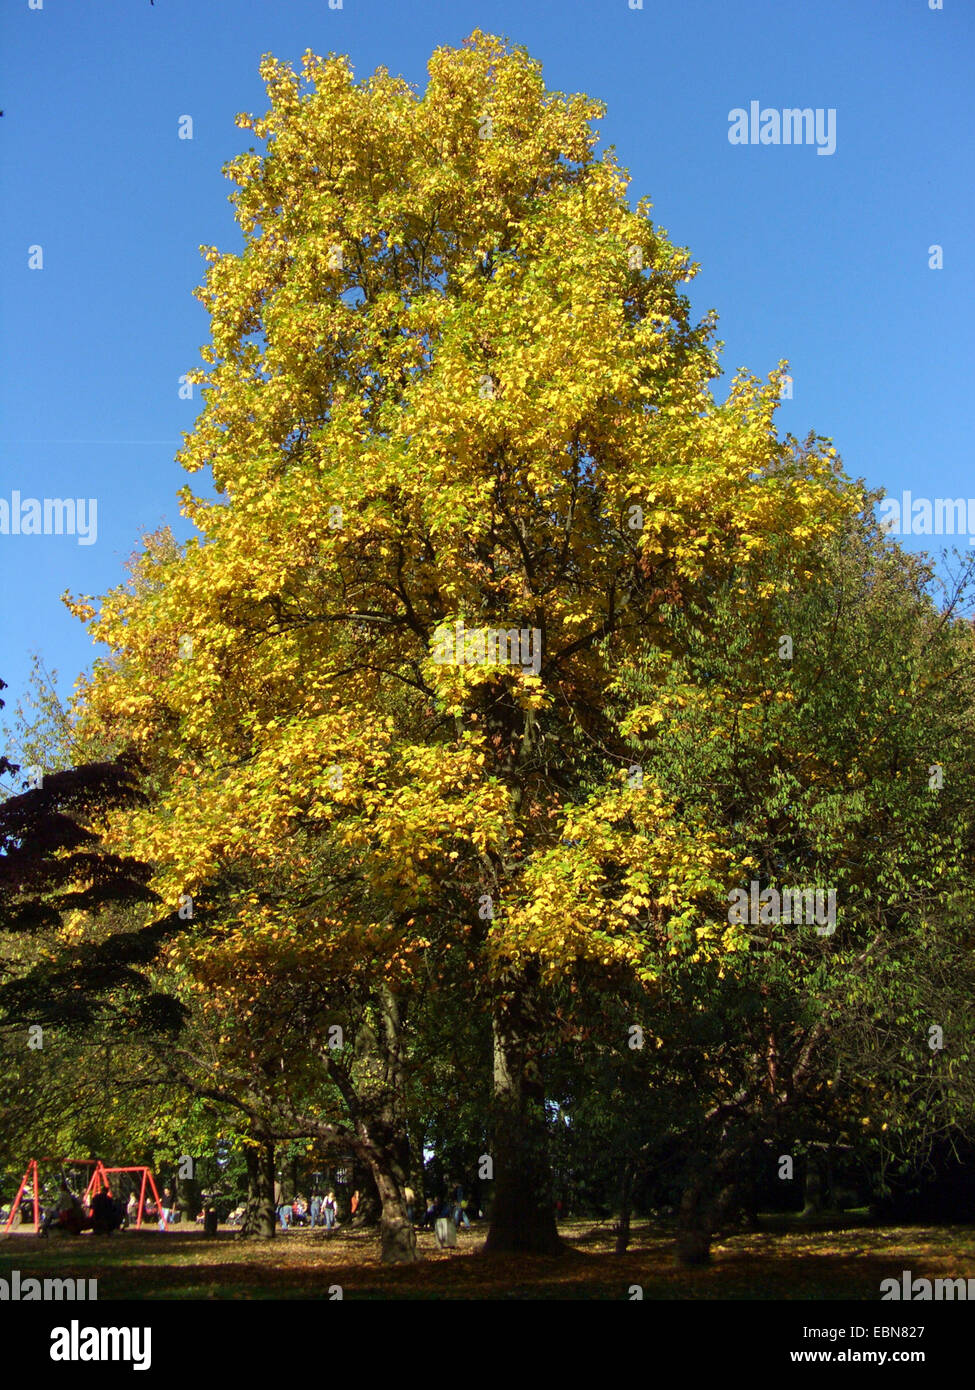 Tulpenbaum (Liriodendron Tulipifera), Baum im Herbst in einem park Stockfoto